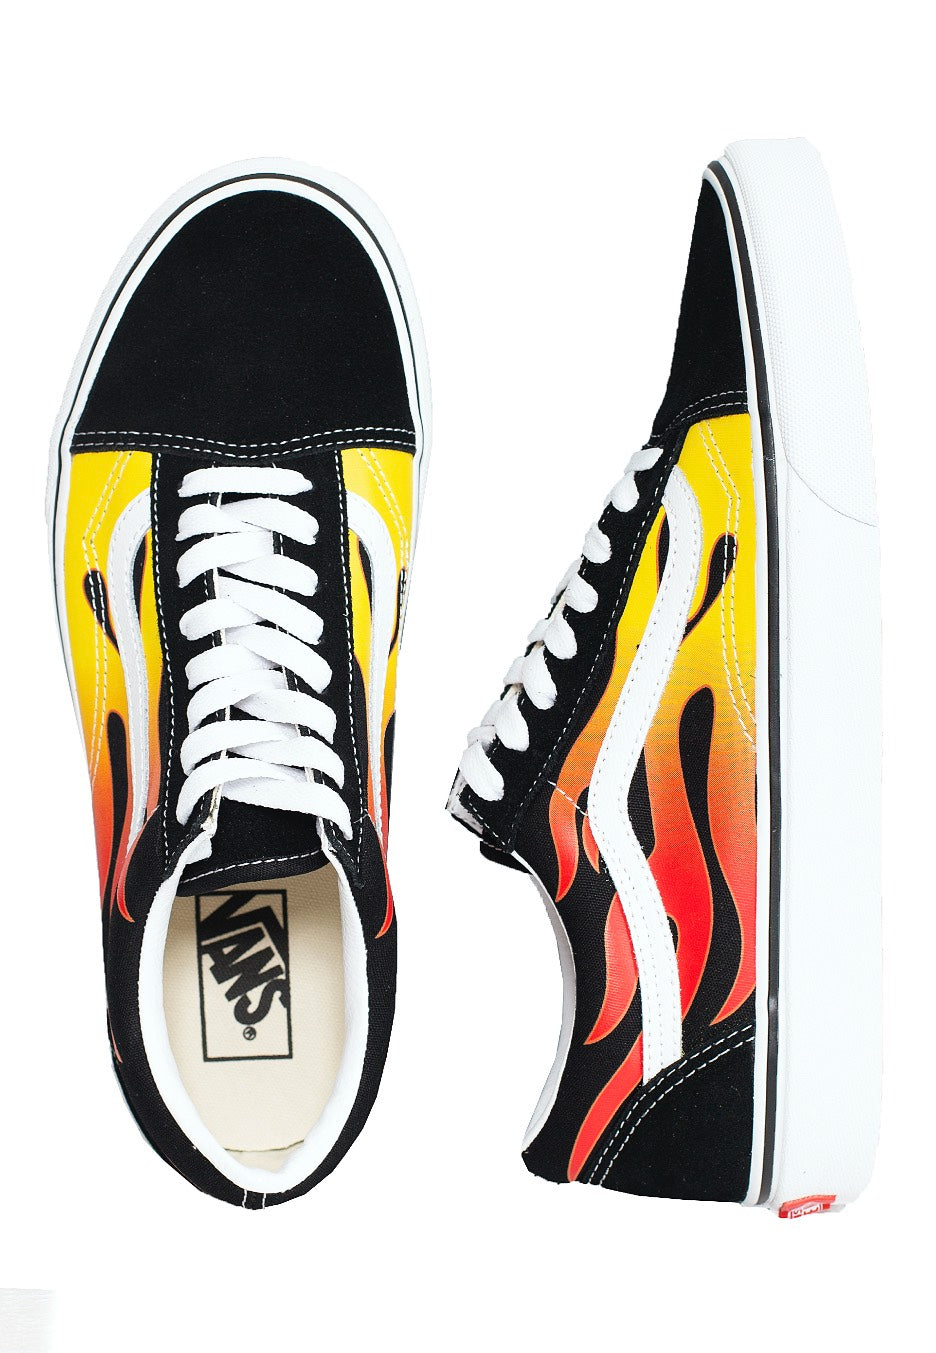 Vans - Old Skool (Flame) Black/Black/True White - Shoes